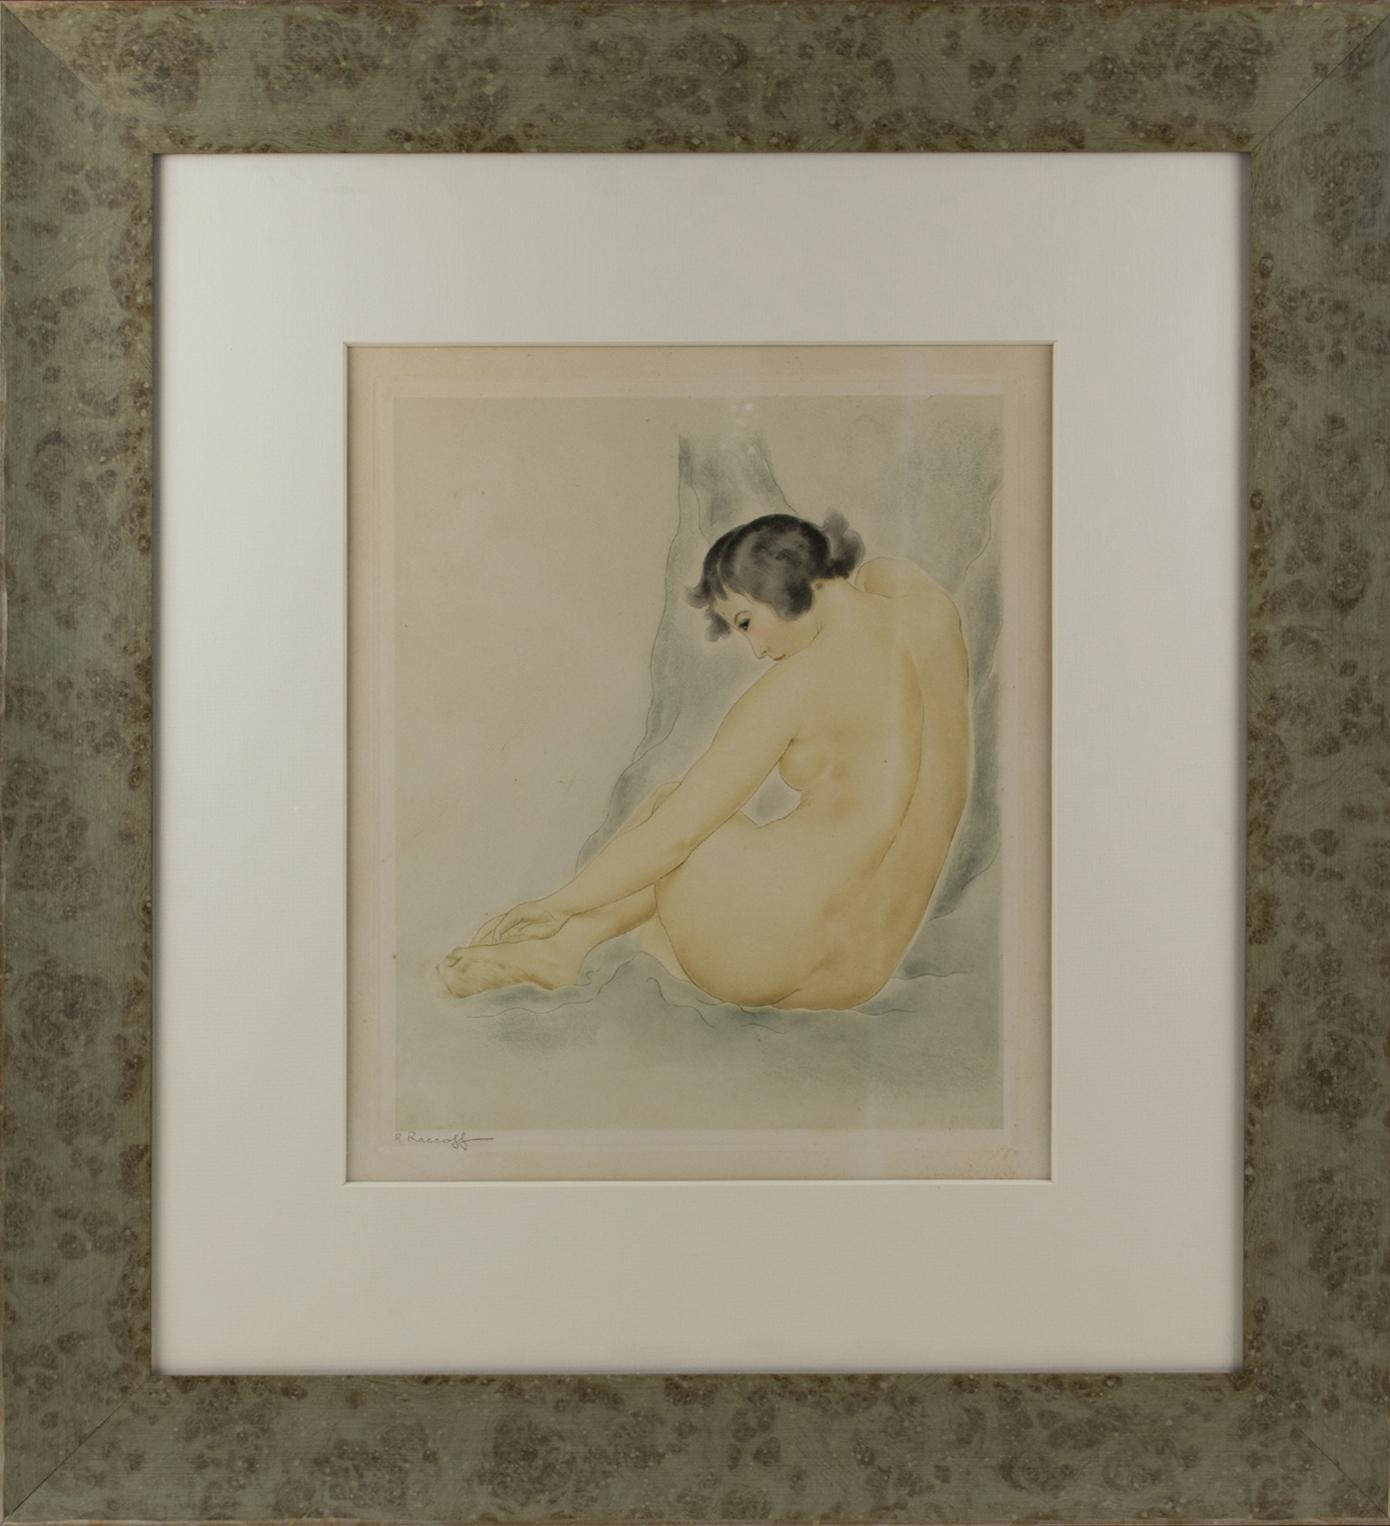 Aquarelle d'étude d'une femme nue réalisée par Rotislaw Racoff